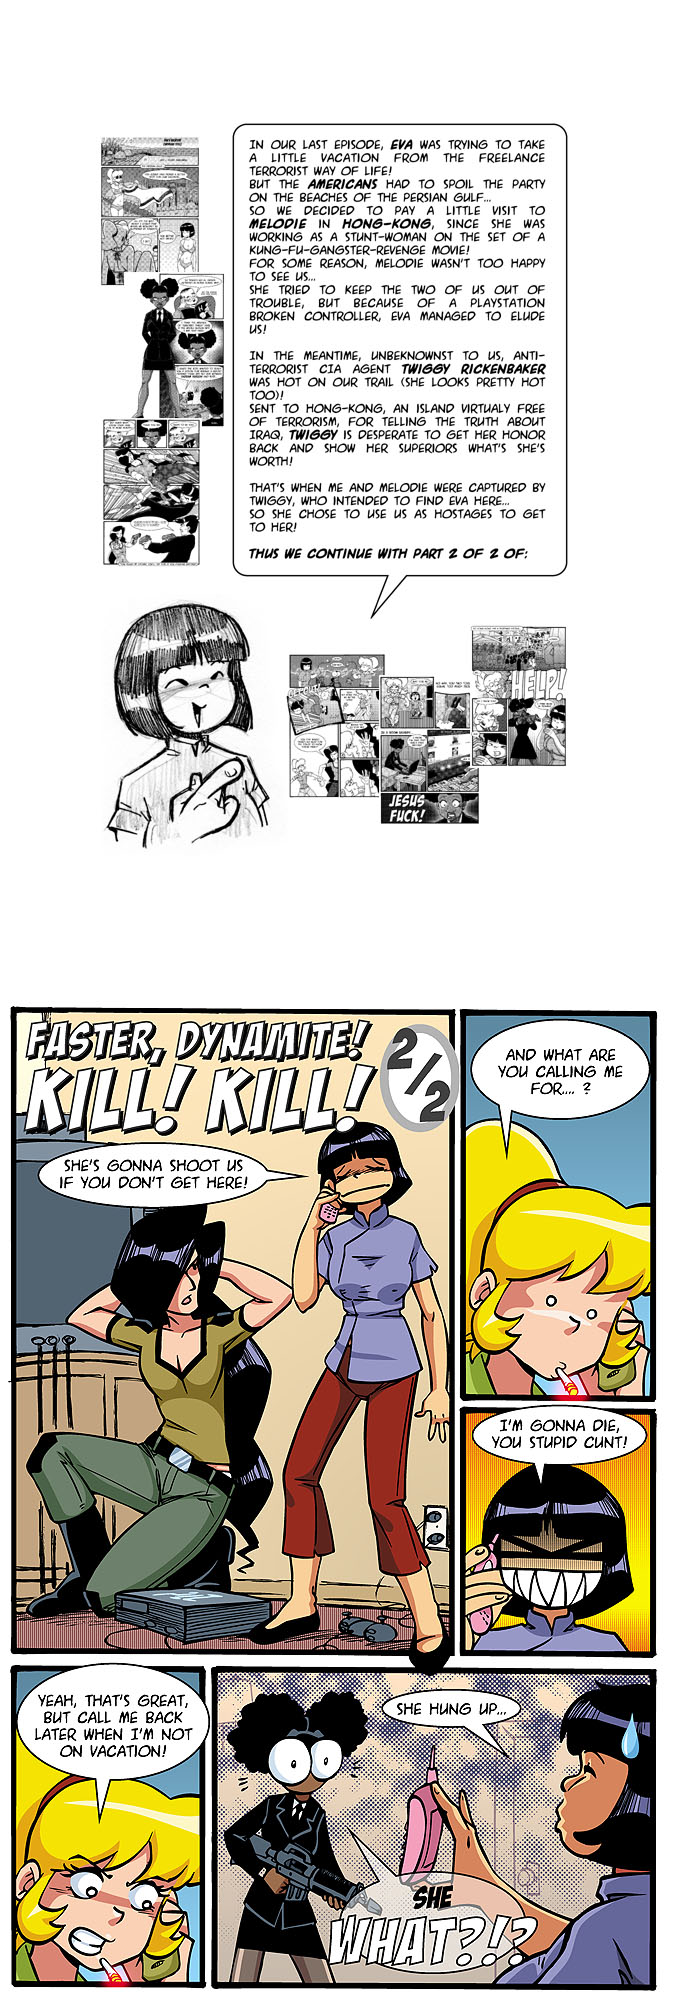 gal/Faster, Dynamite! Kill! Kill!/faster020.jpg